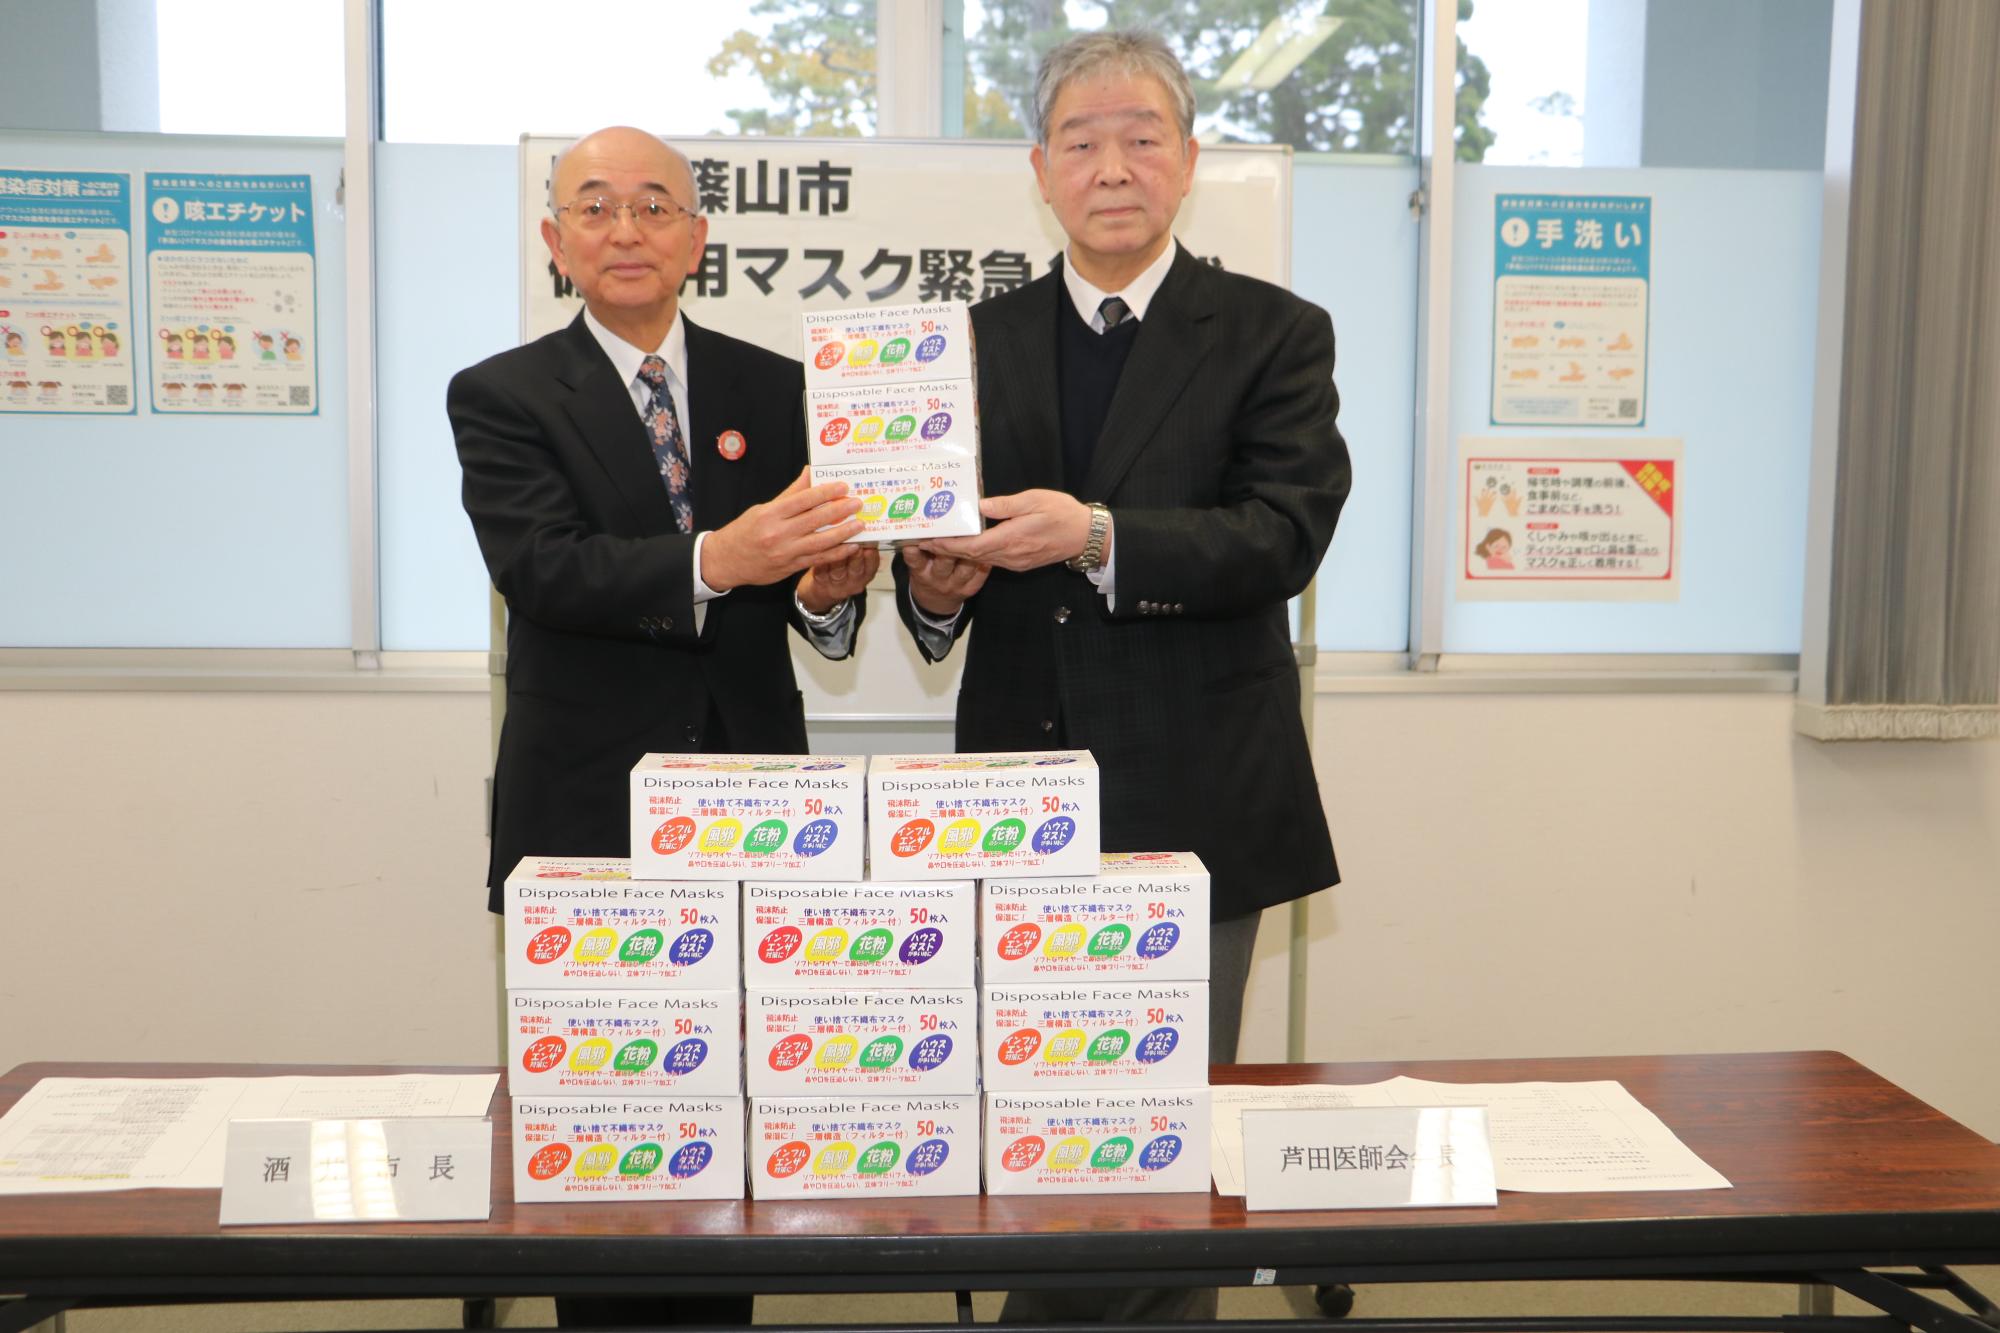 机に市から寄贈するマスクの箱が並べられ、医師会会長の芦田先生と酒井市長が立って隣に並び、マスクの箱を一緒に持っている写真